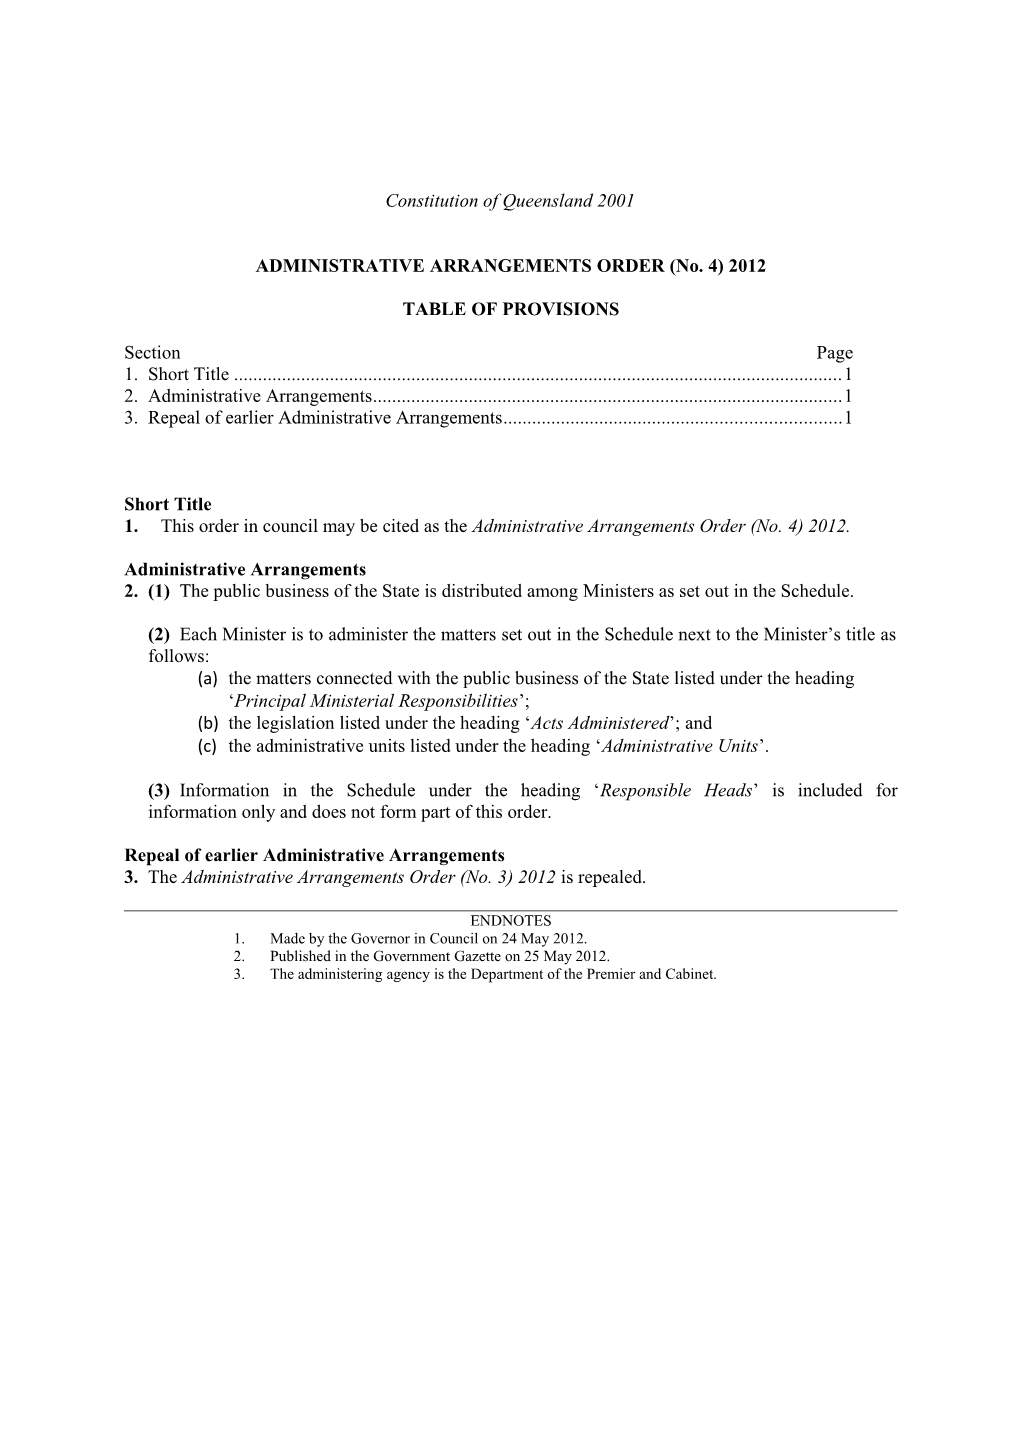 Administrative Arrangements Order (No. 4) 2012